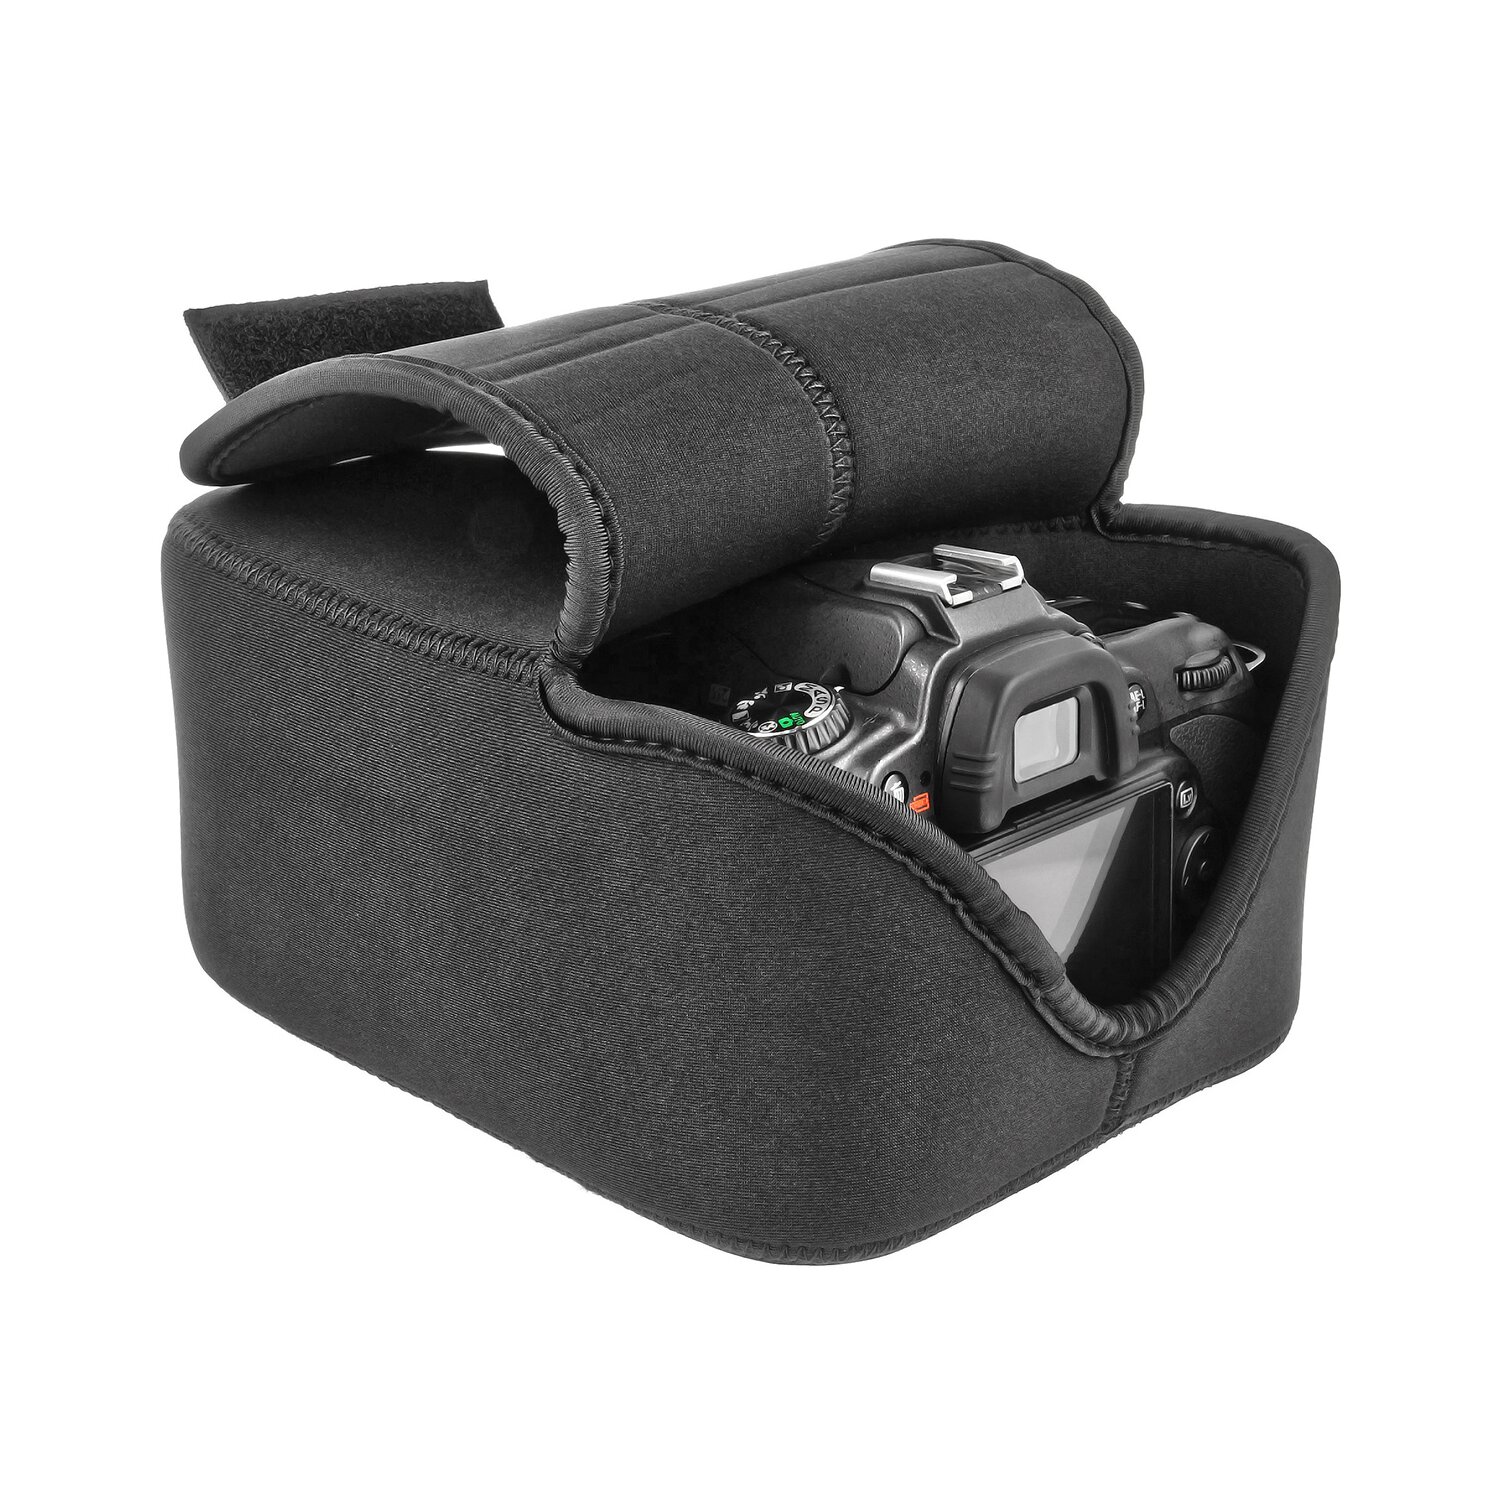 Neopren SLR Kamera Objektiv Tragetasche mit Clip Größe 240 x 90 mm in schwarz 